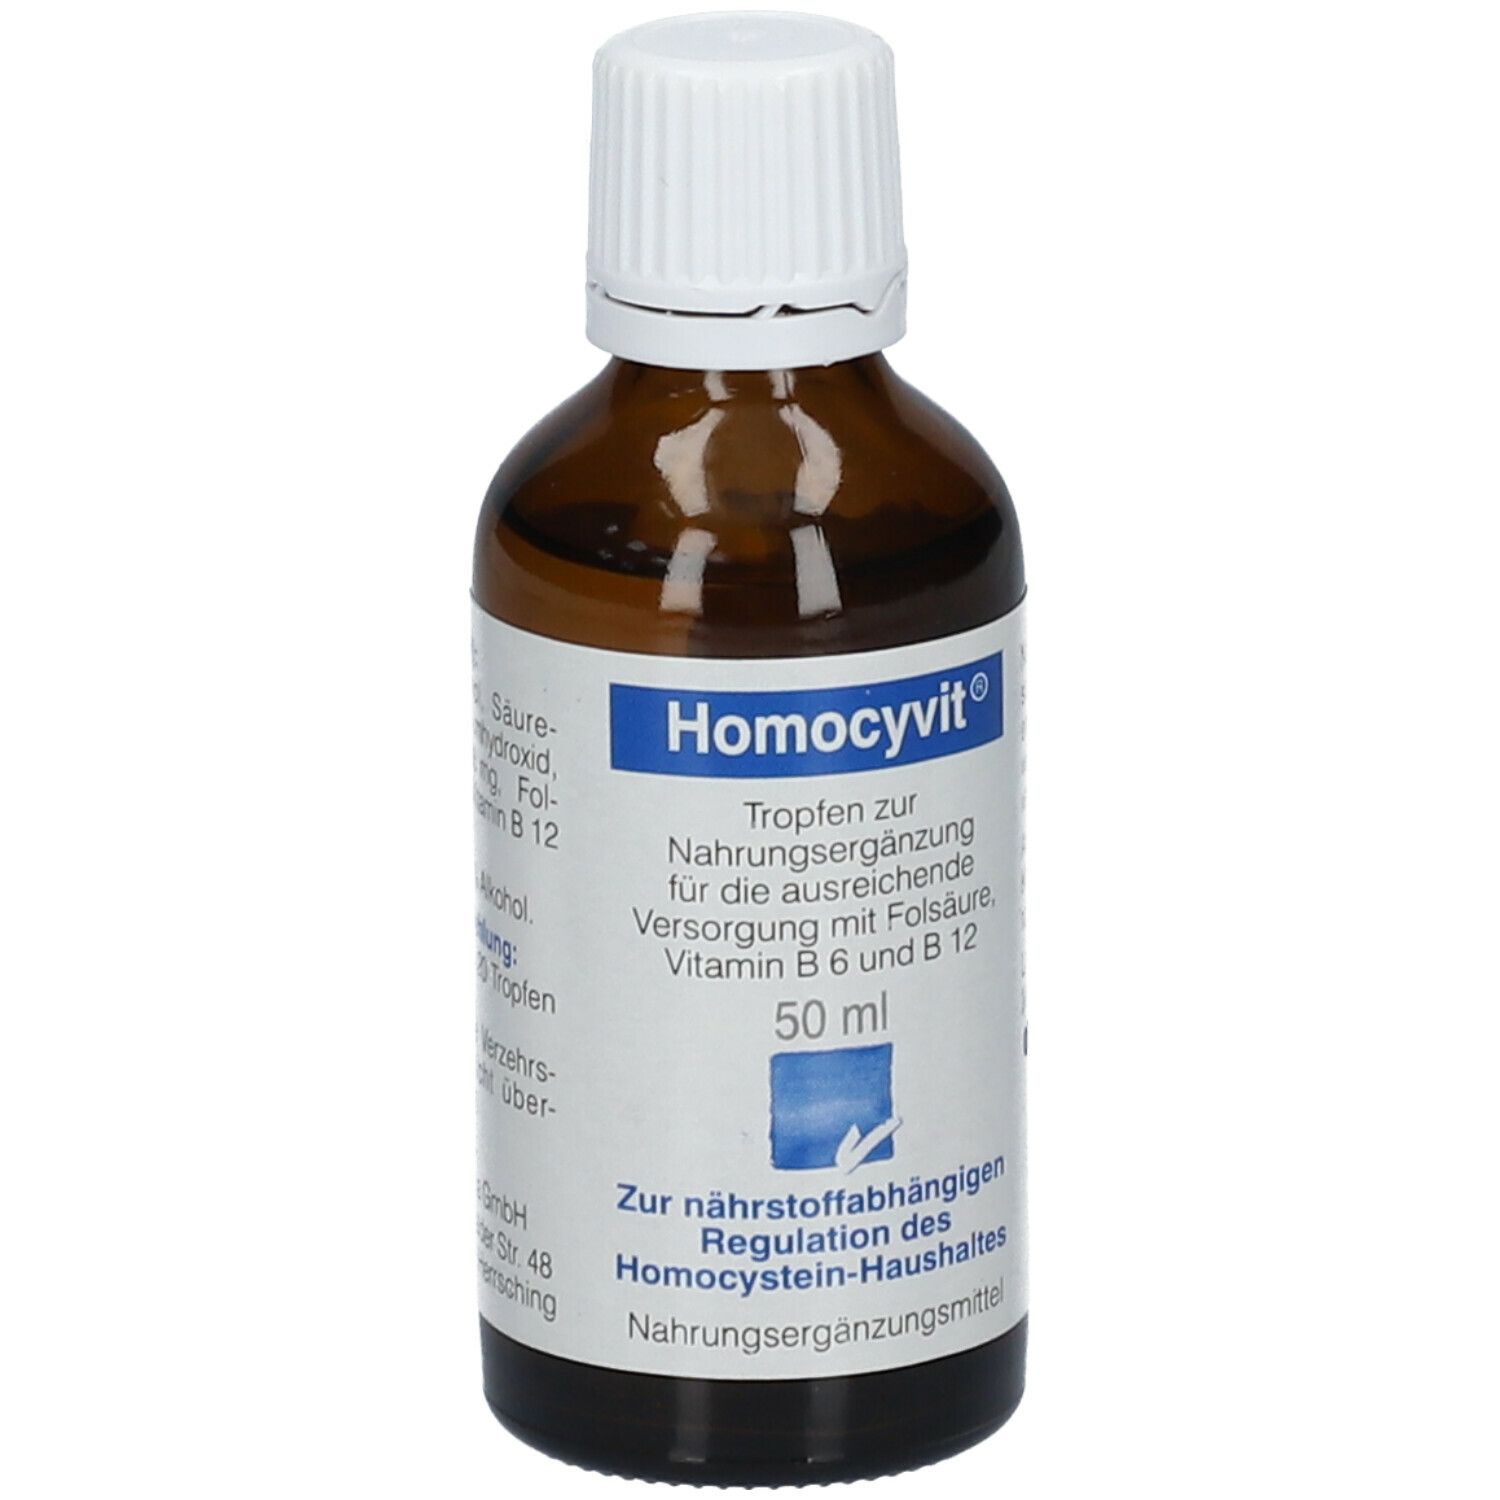 Homocyvit® Tropfen